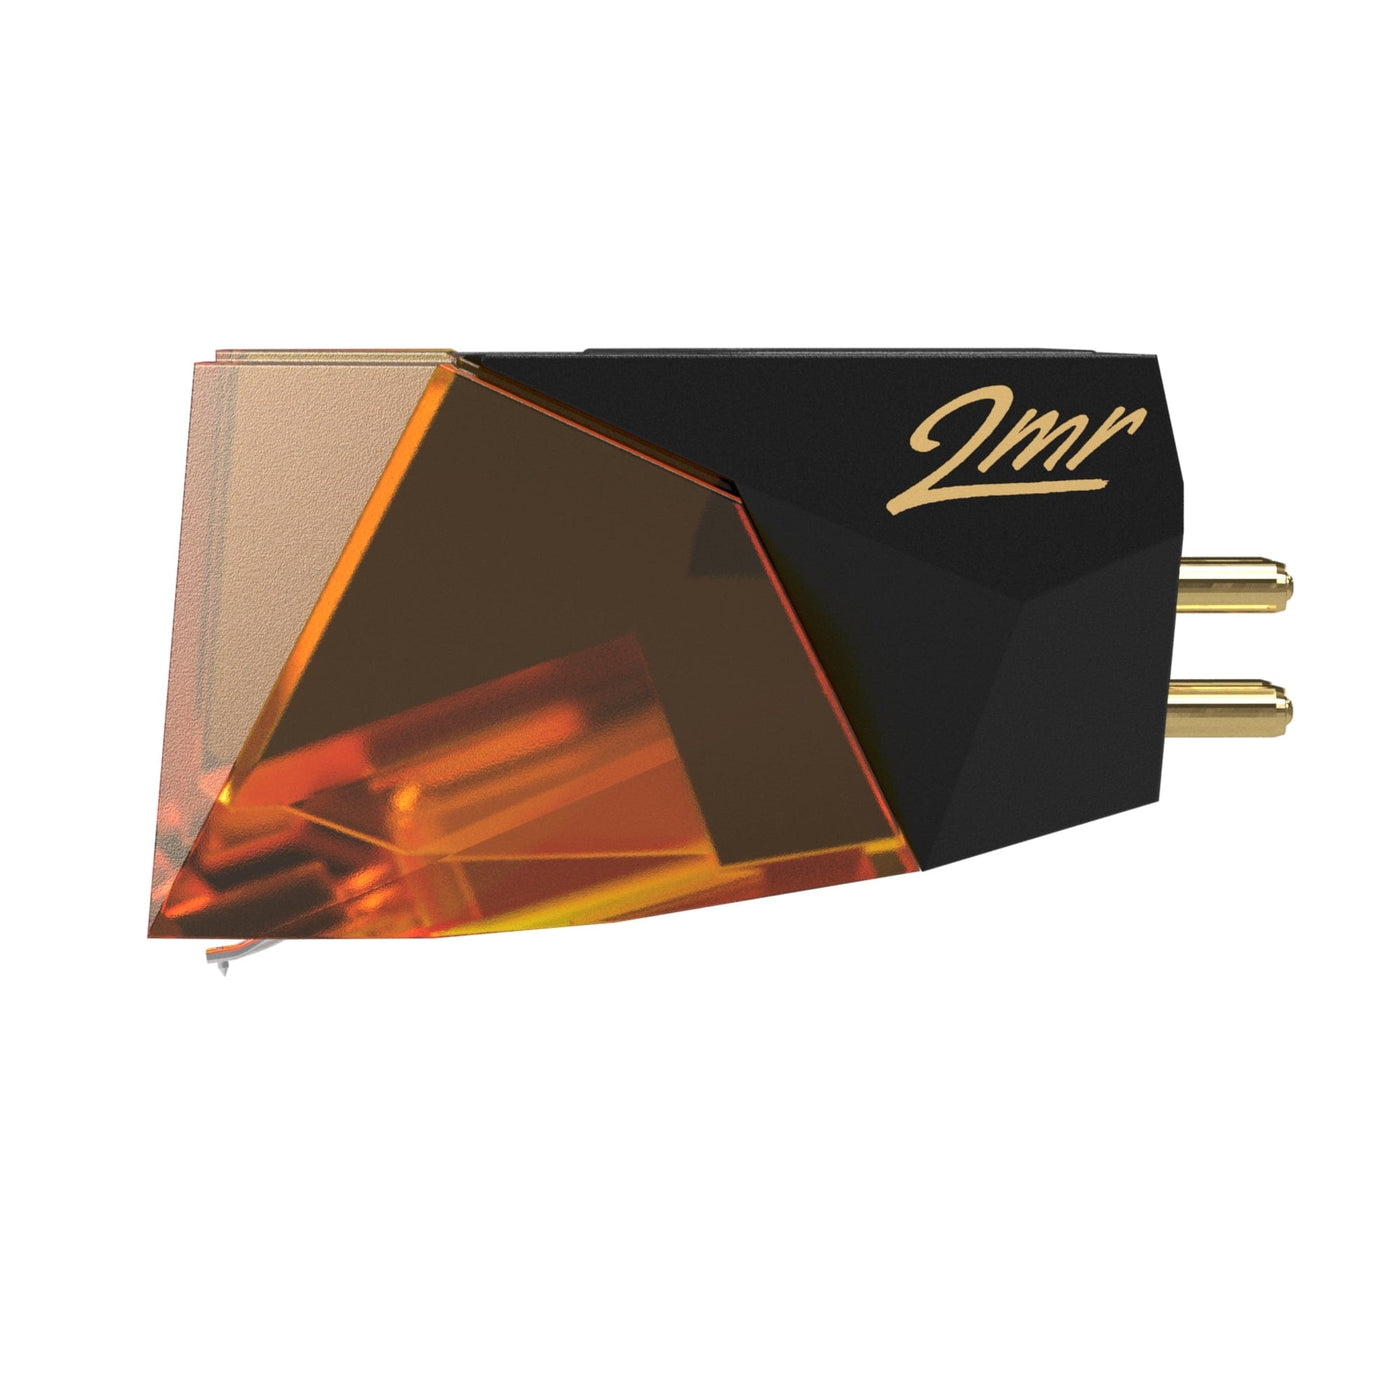 Ortofon Ortofon 2MR Bronze (suits Rega turntables) Moving Magnet Cartridge Turntable Cartridges